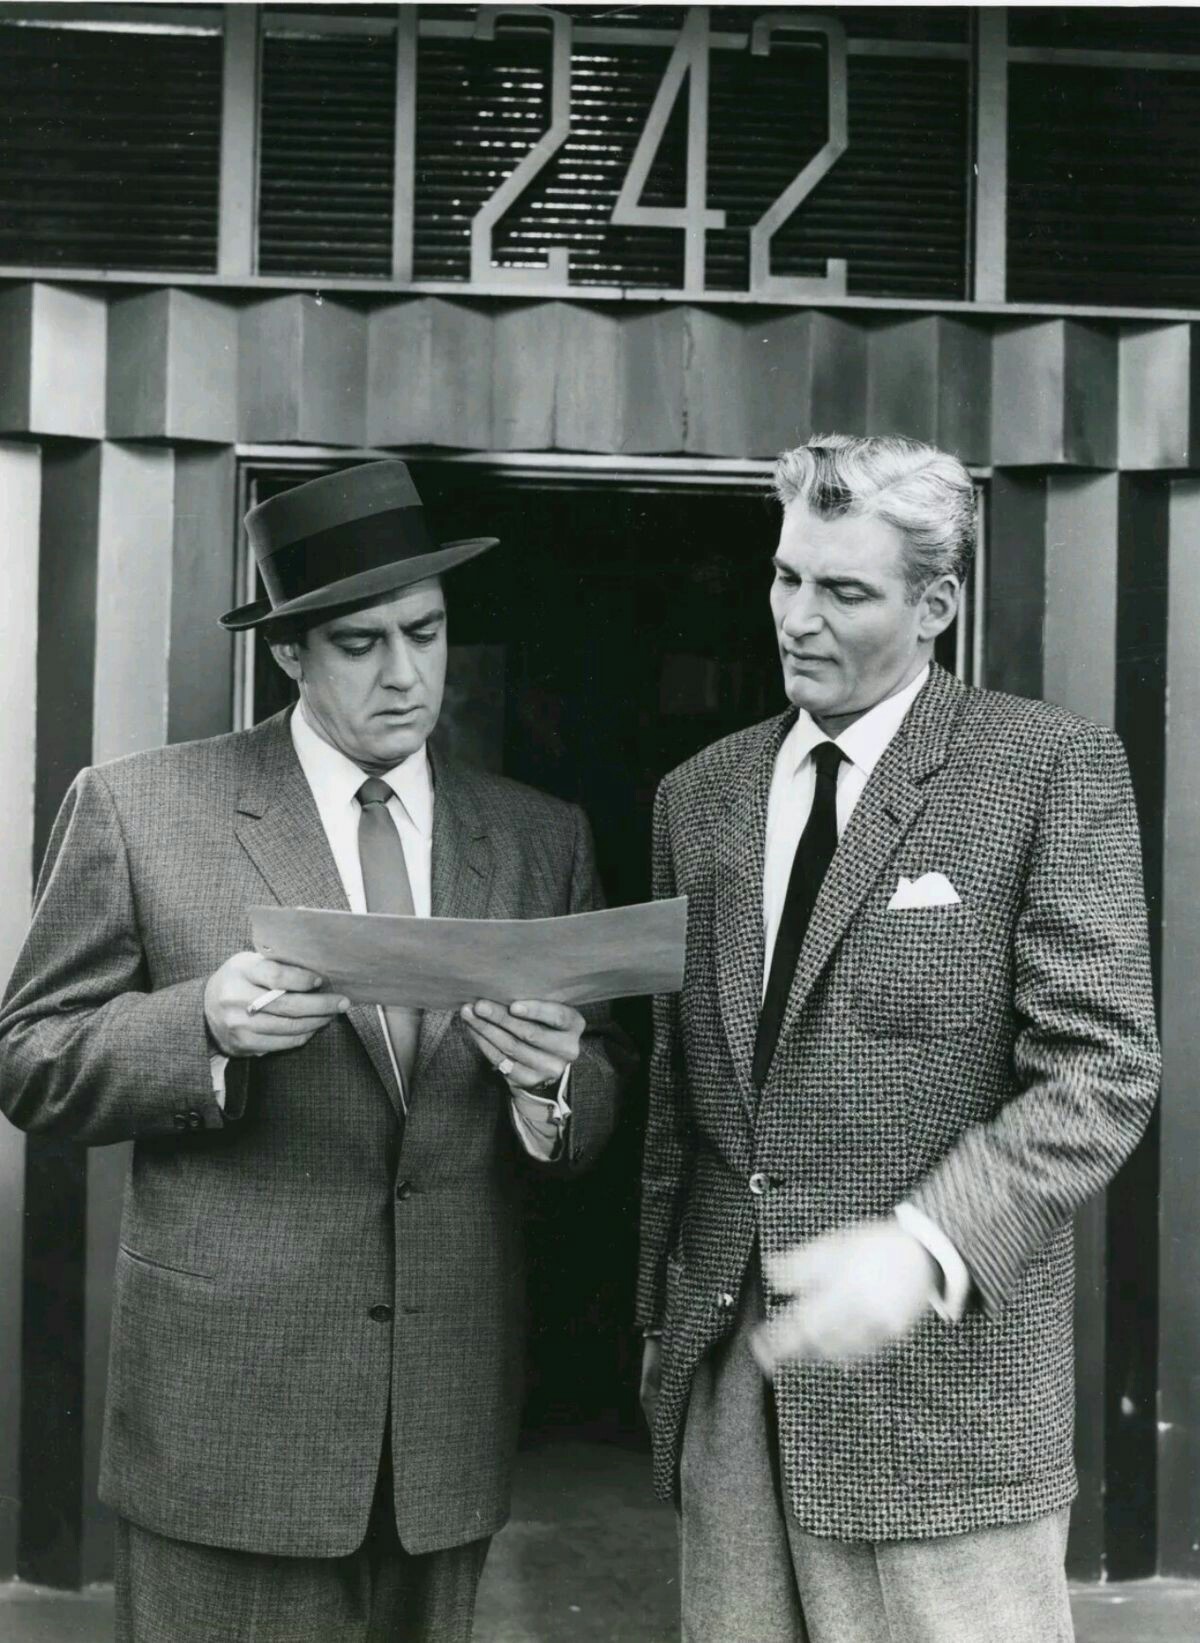 Retro TV Place — Raymond Burr and William Hopper